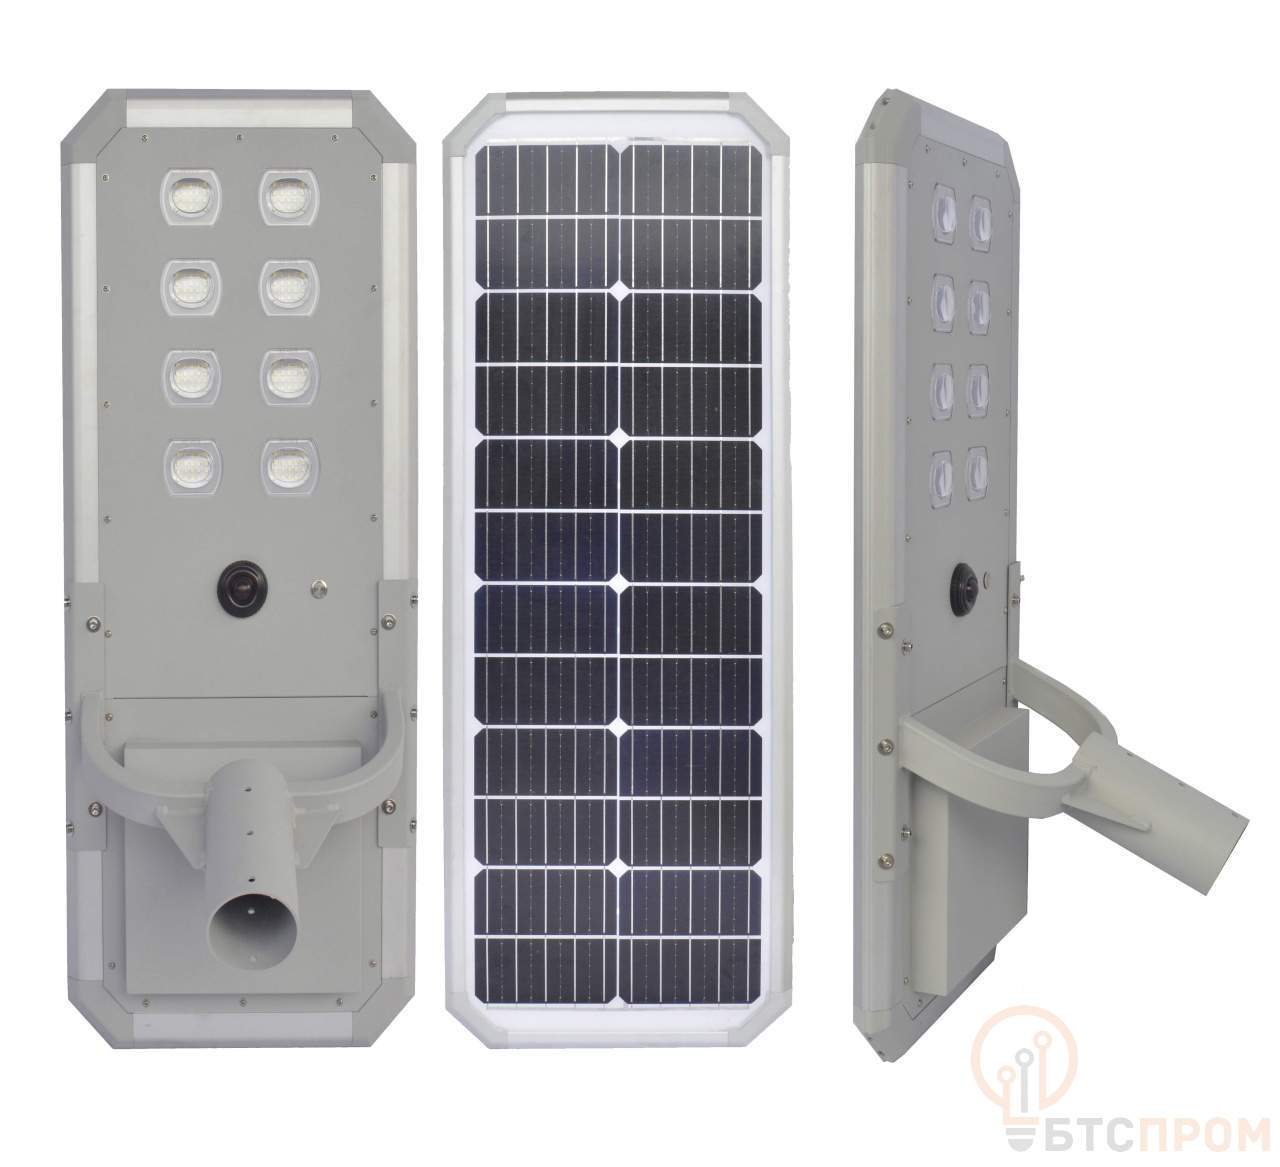  Уличный светодиодный светильник на солнечной батарее Led Favourite JX-SSL-AL4-60W фото в каталоге от BTSprom.by